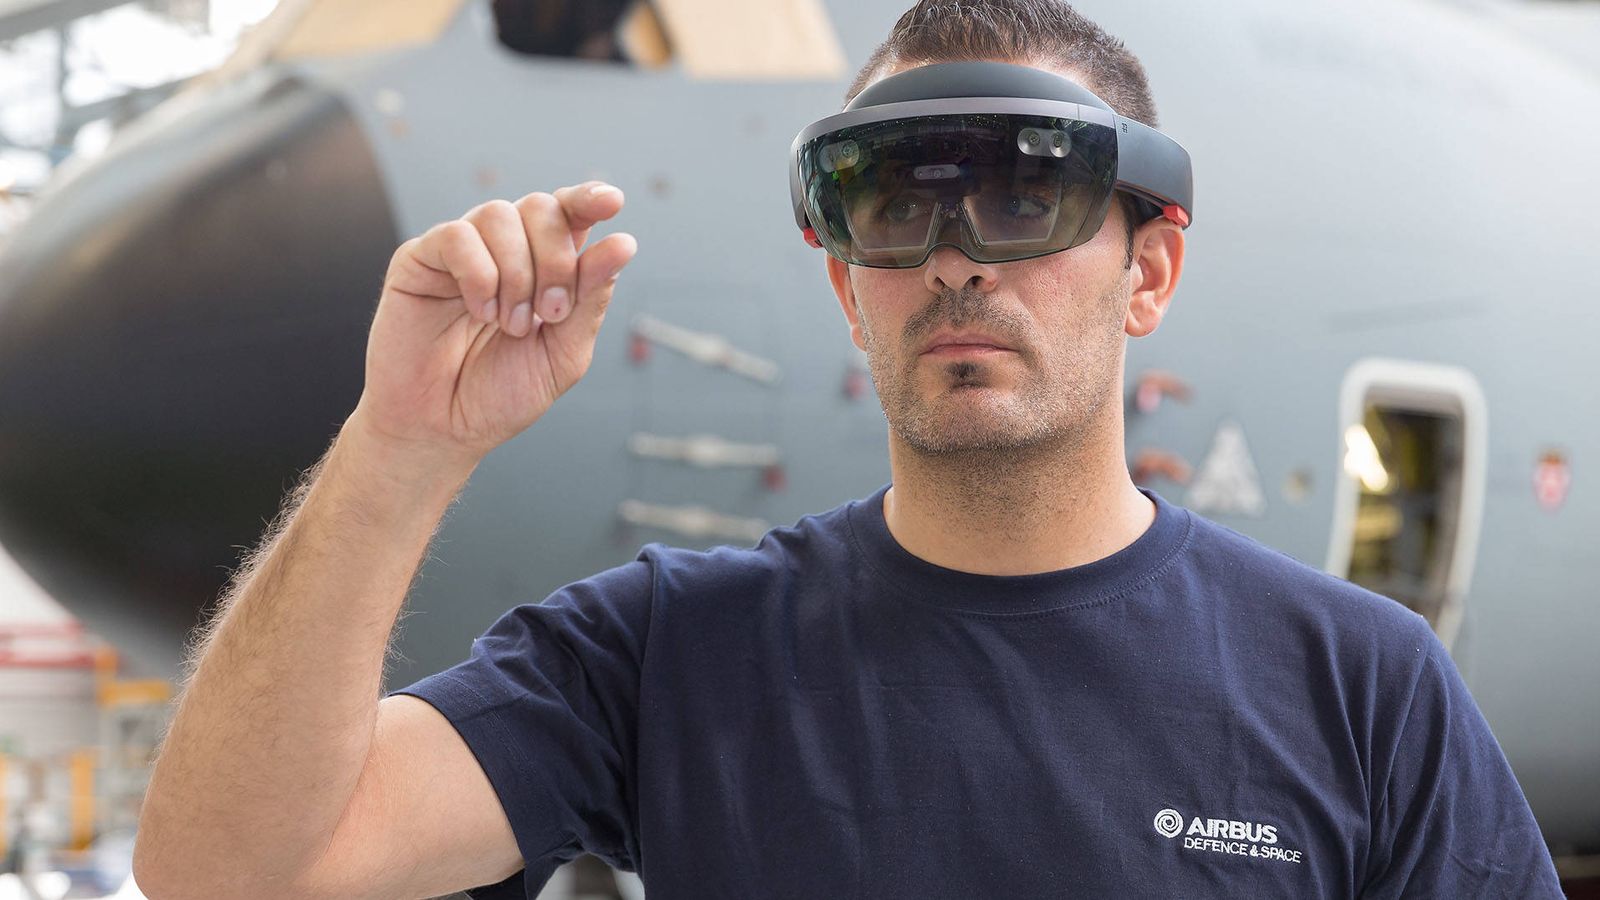 Foto: Las gafas de realidad aumentada (ya sean Google Glass o Hololens) son esenciales para este proyecto. (Airbus)